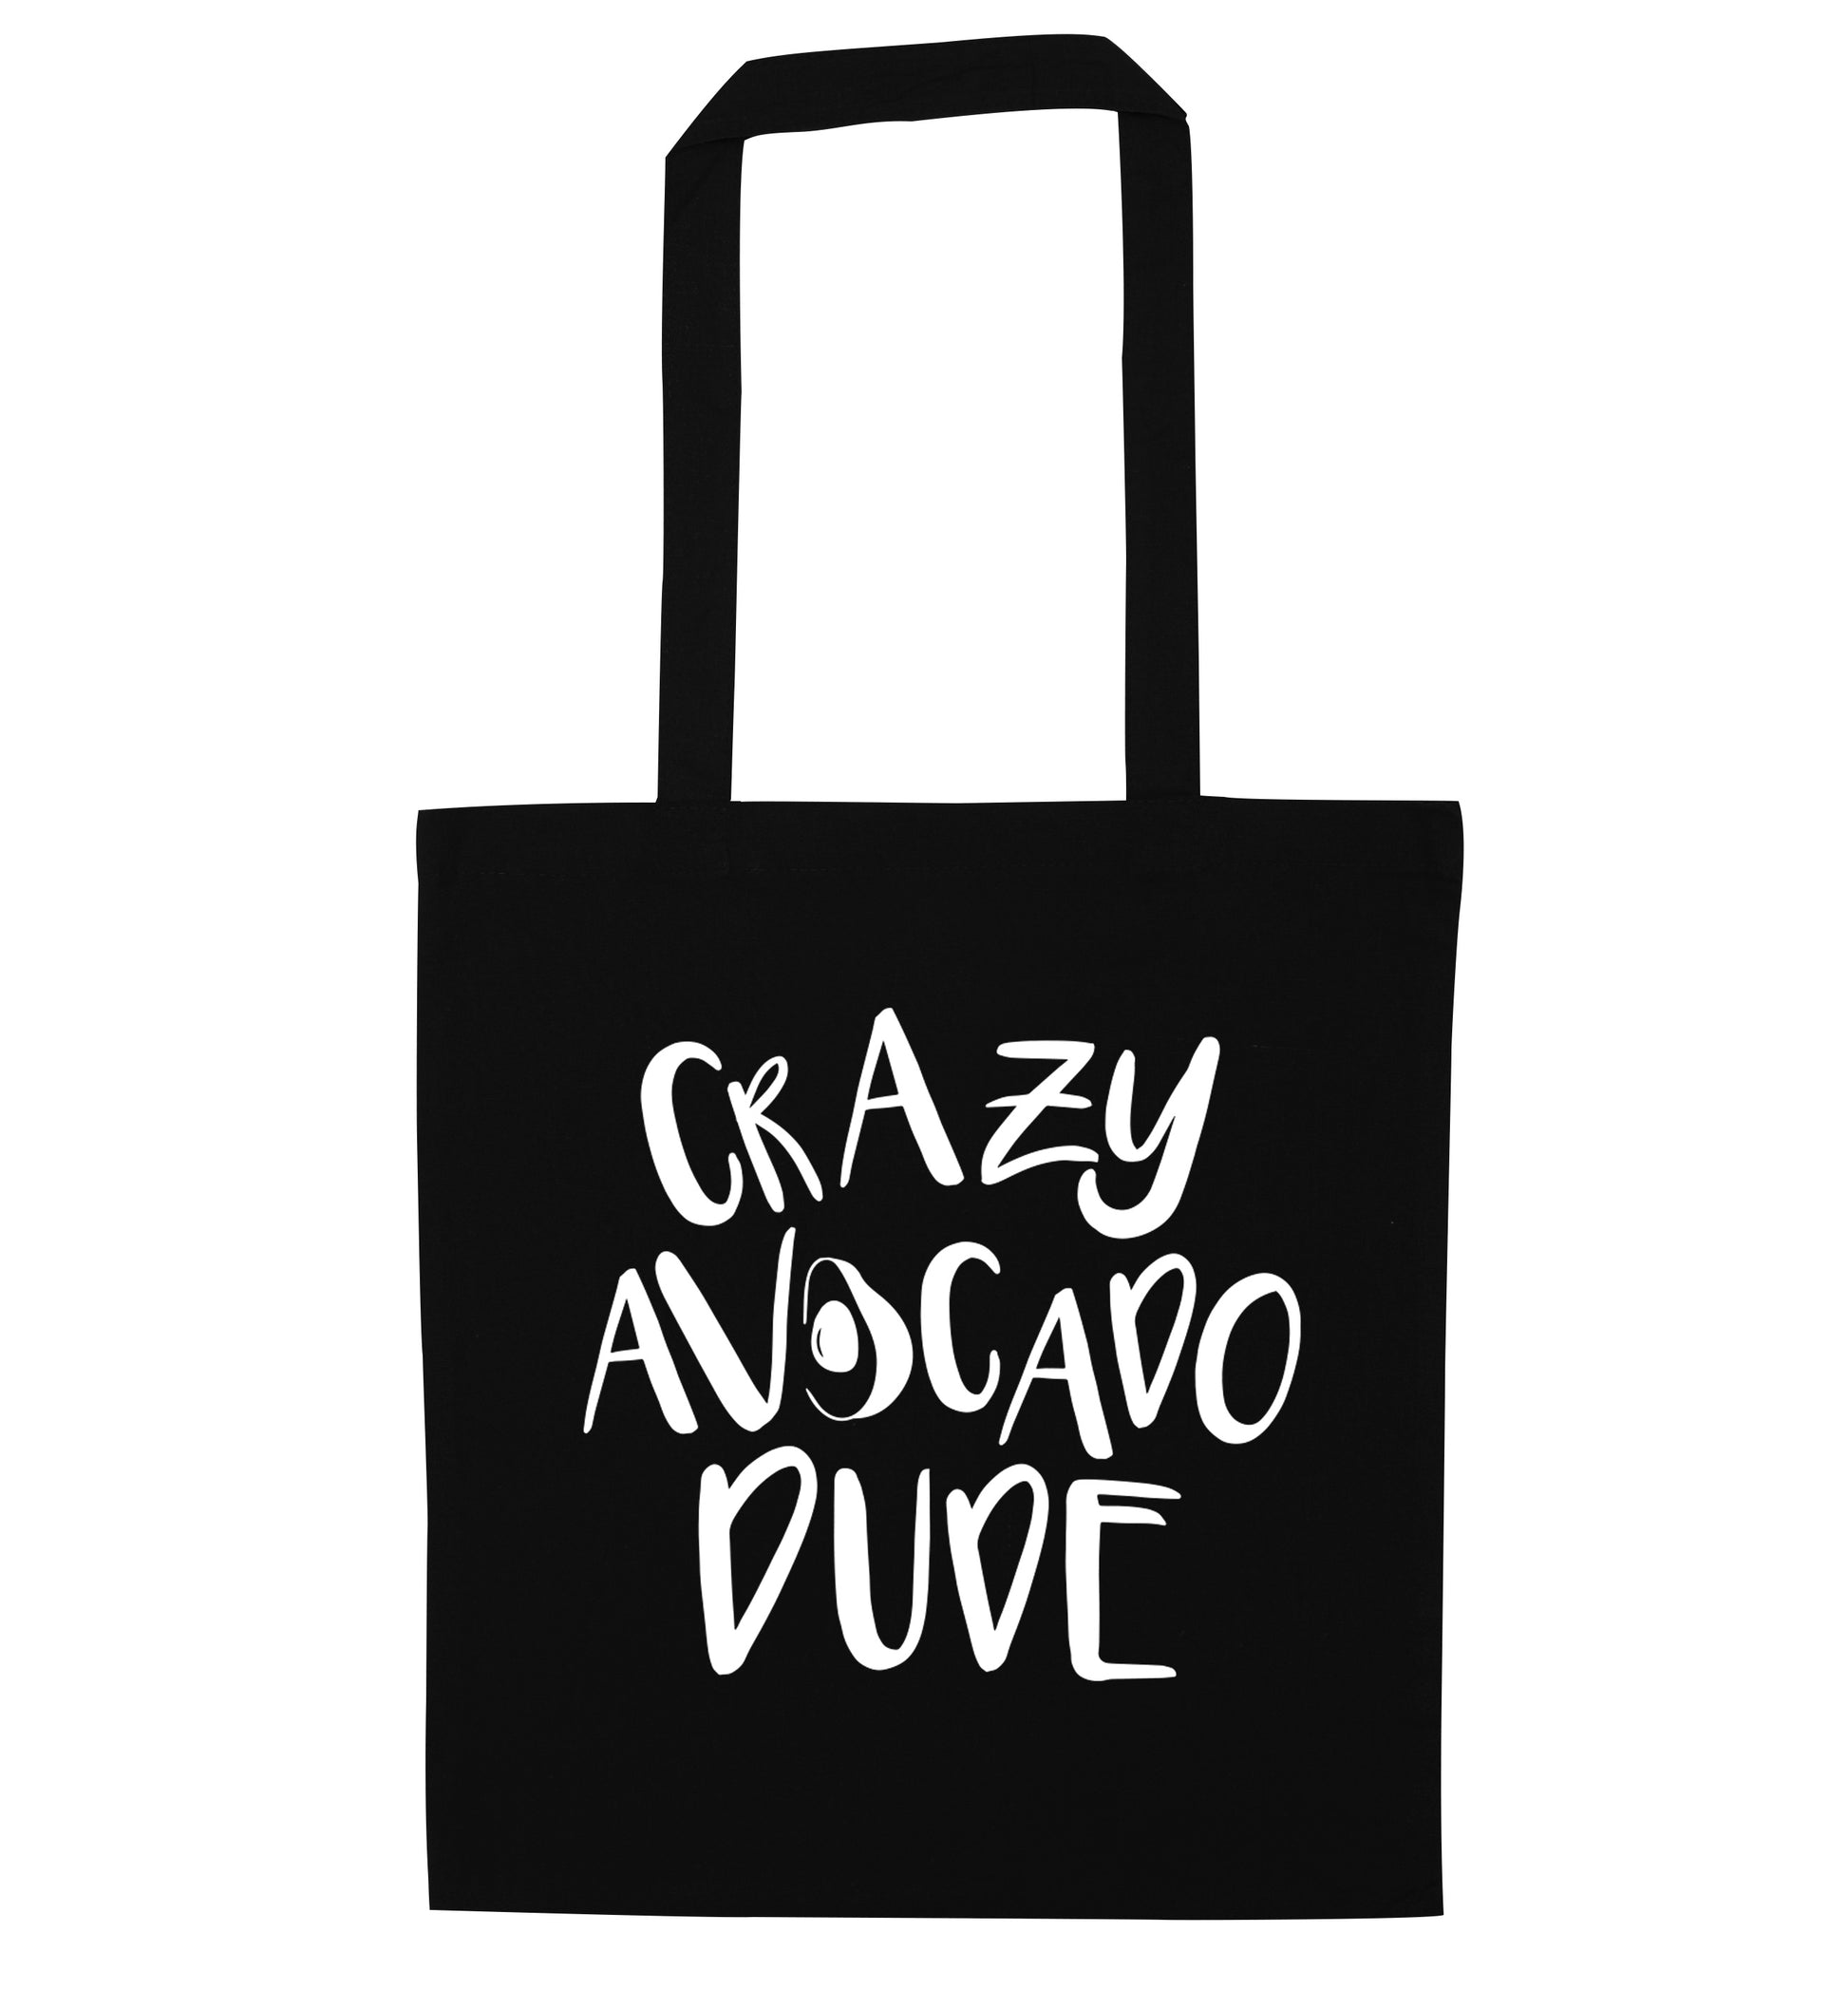 Crazy avocado dude black tote bag